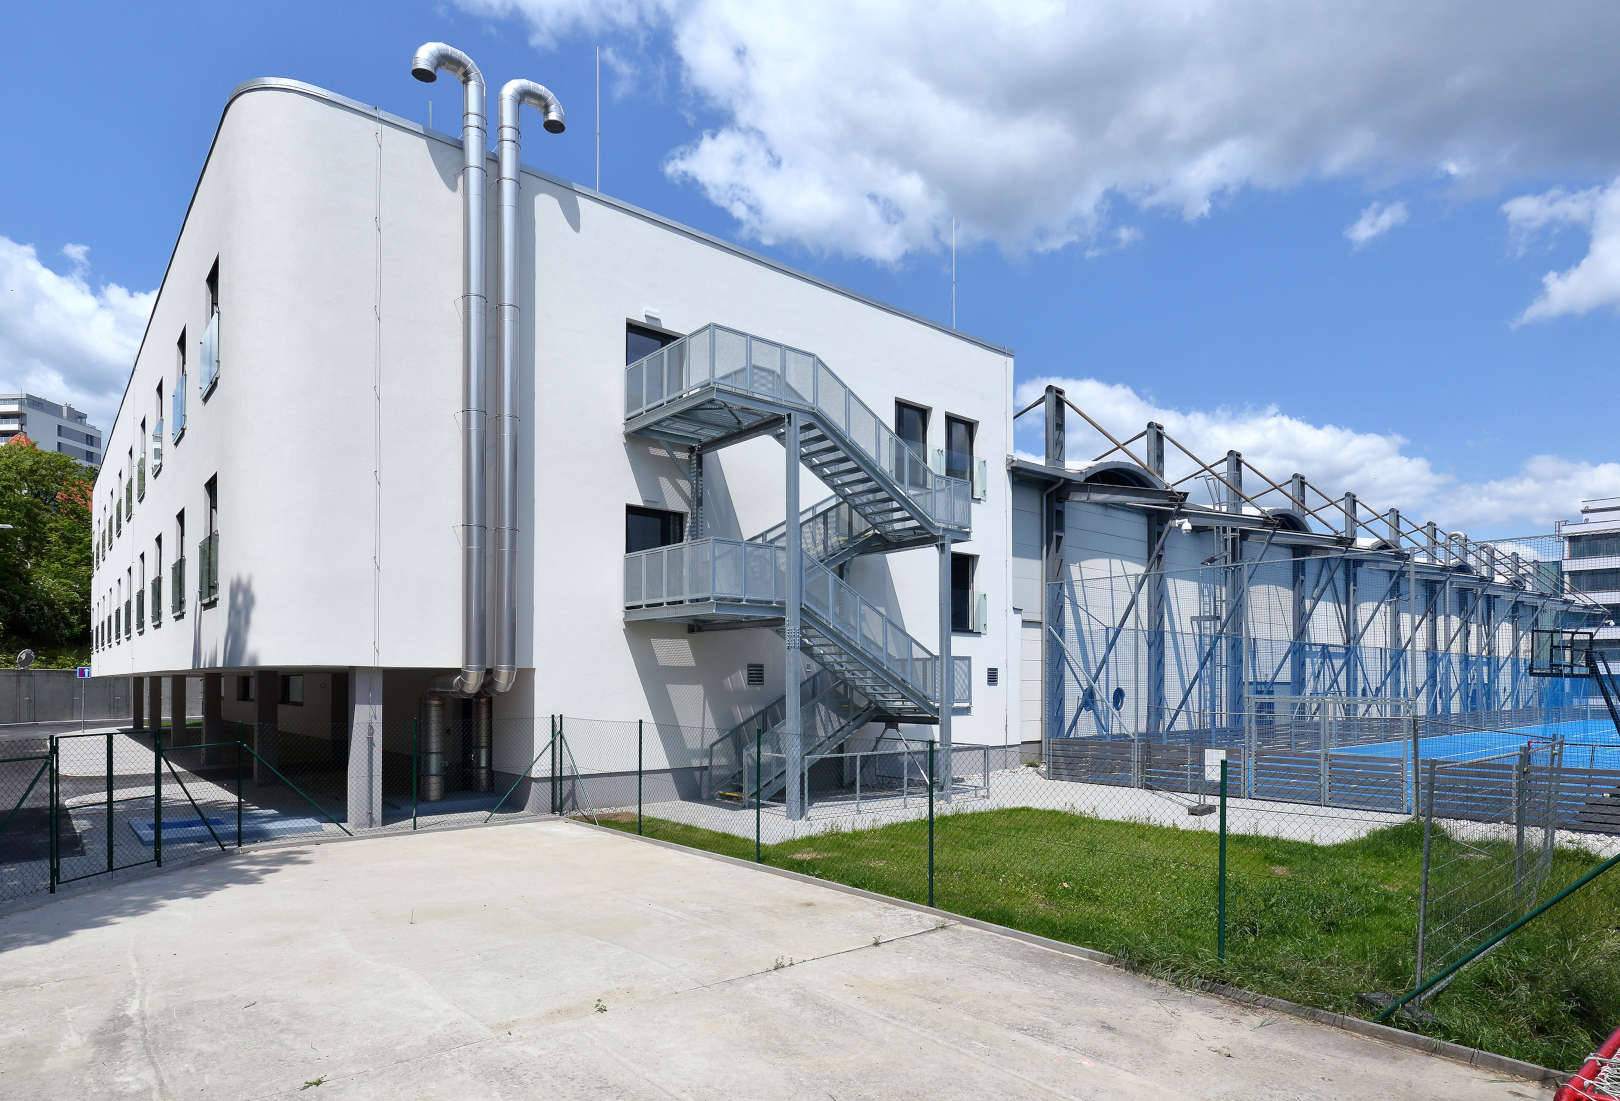 Plzeň – ubytovací zařízení u zimního stadionu - Building construction